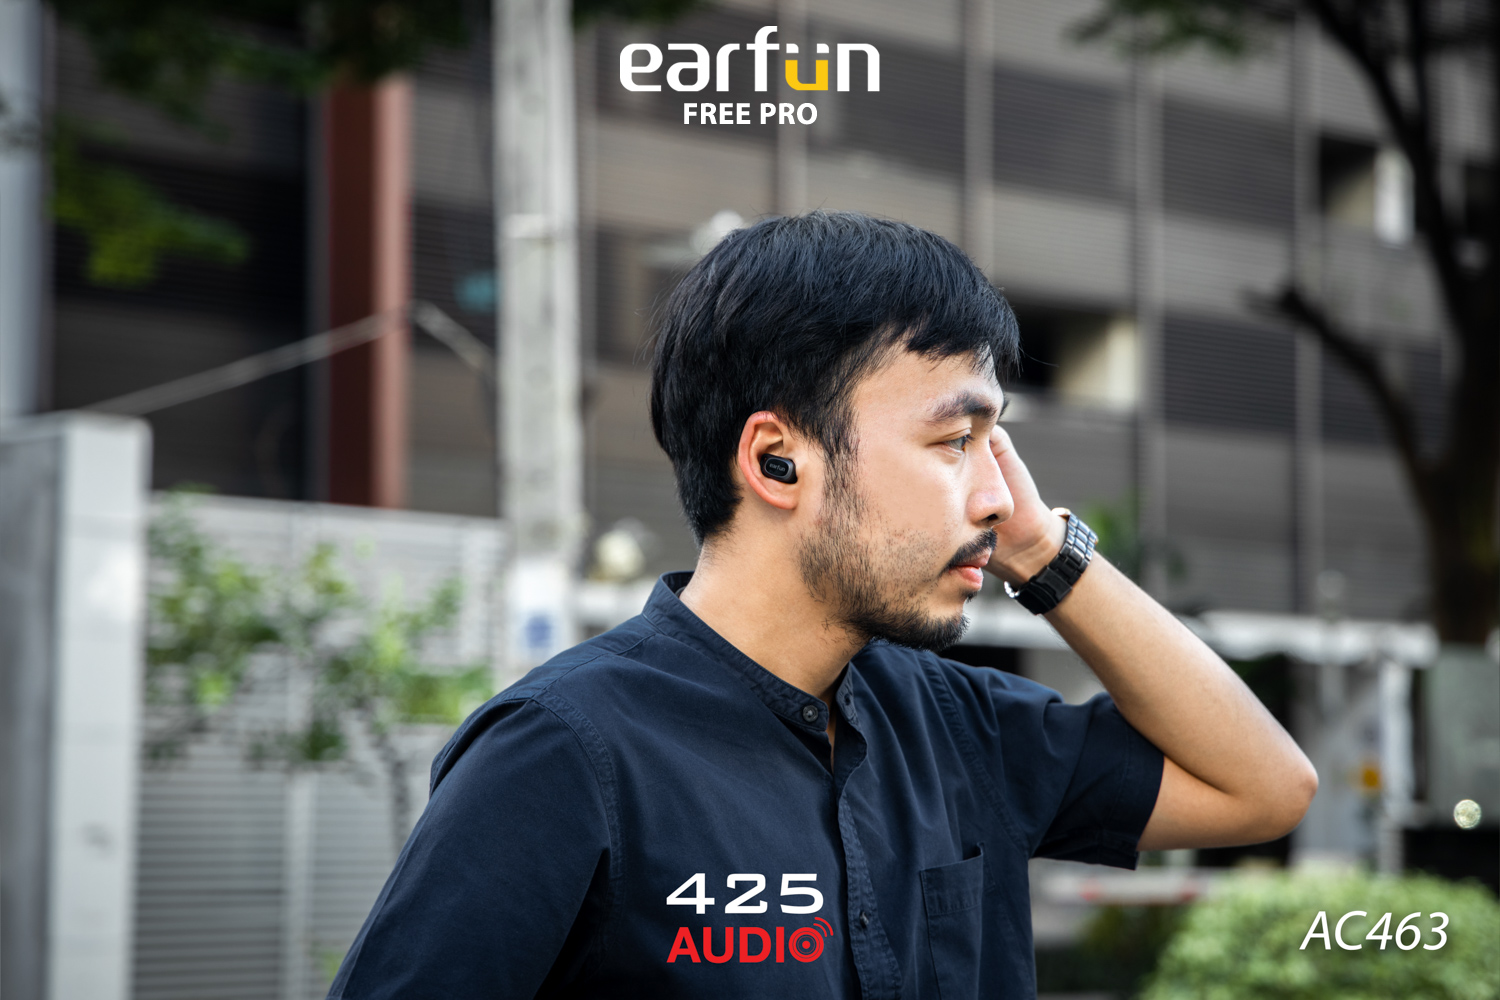 earfun free pro